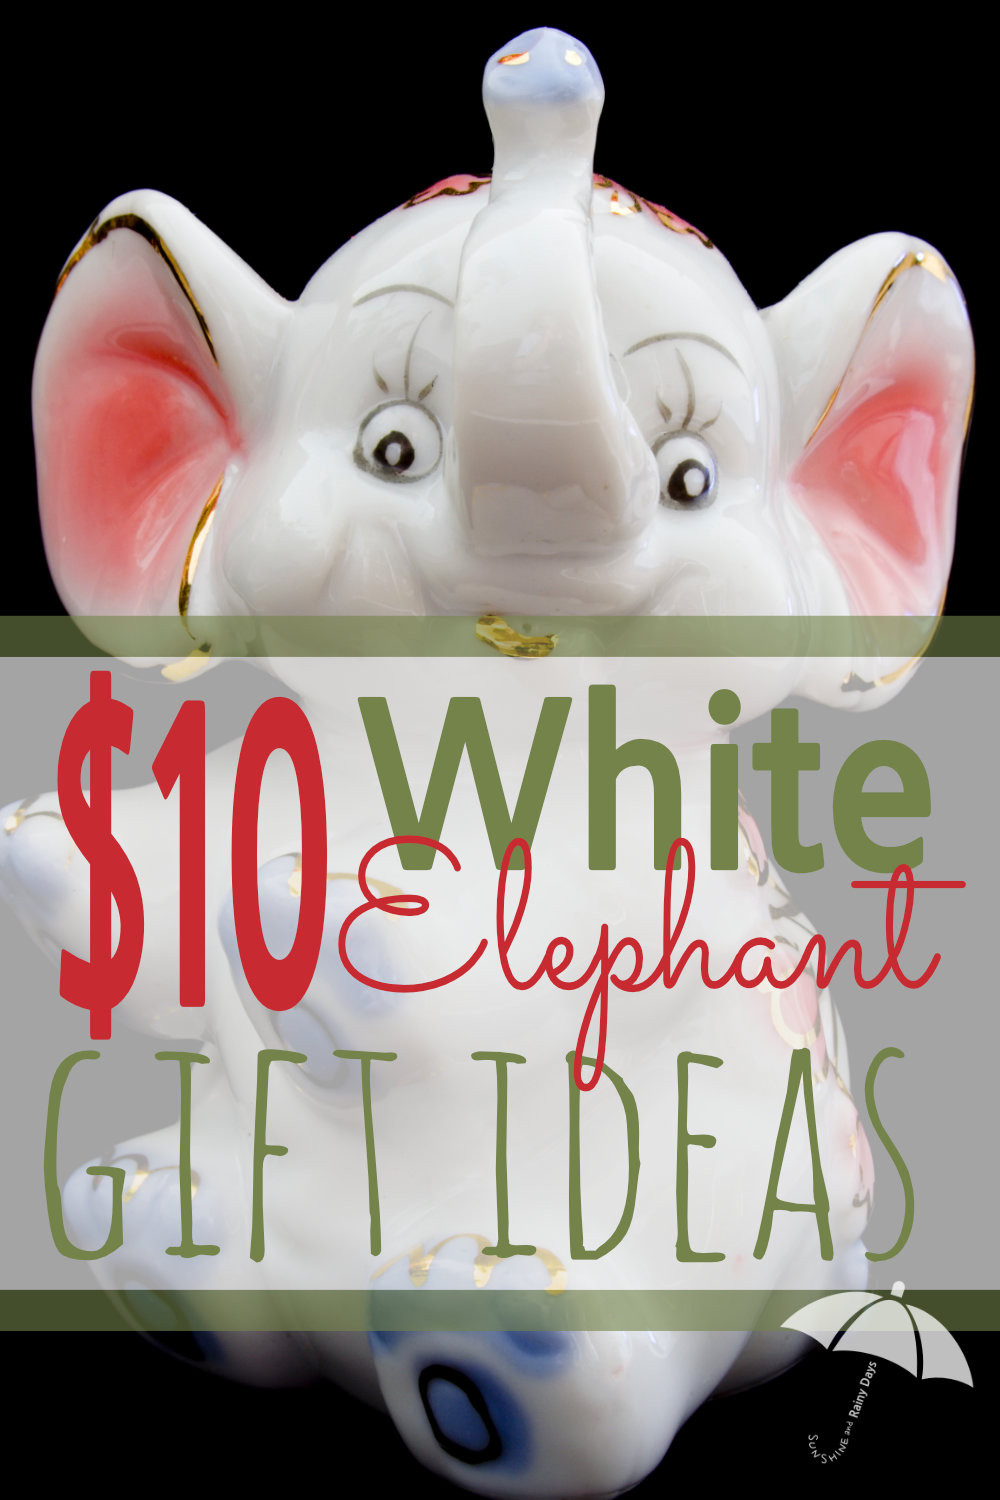 White Elephant Christmas Gift Ideas
 $10 White Elephant Gift Exchange Ideas Sunshine and